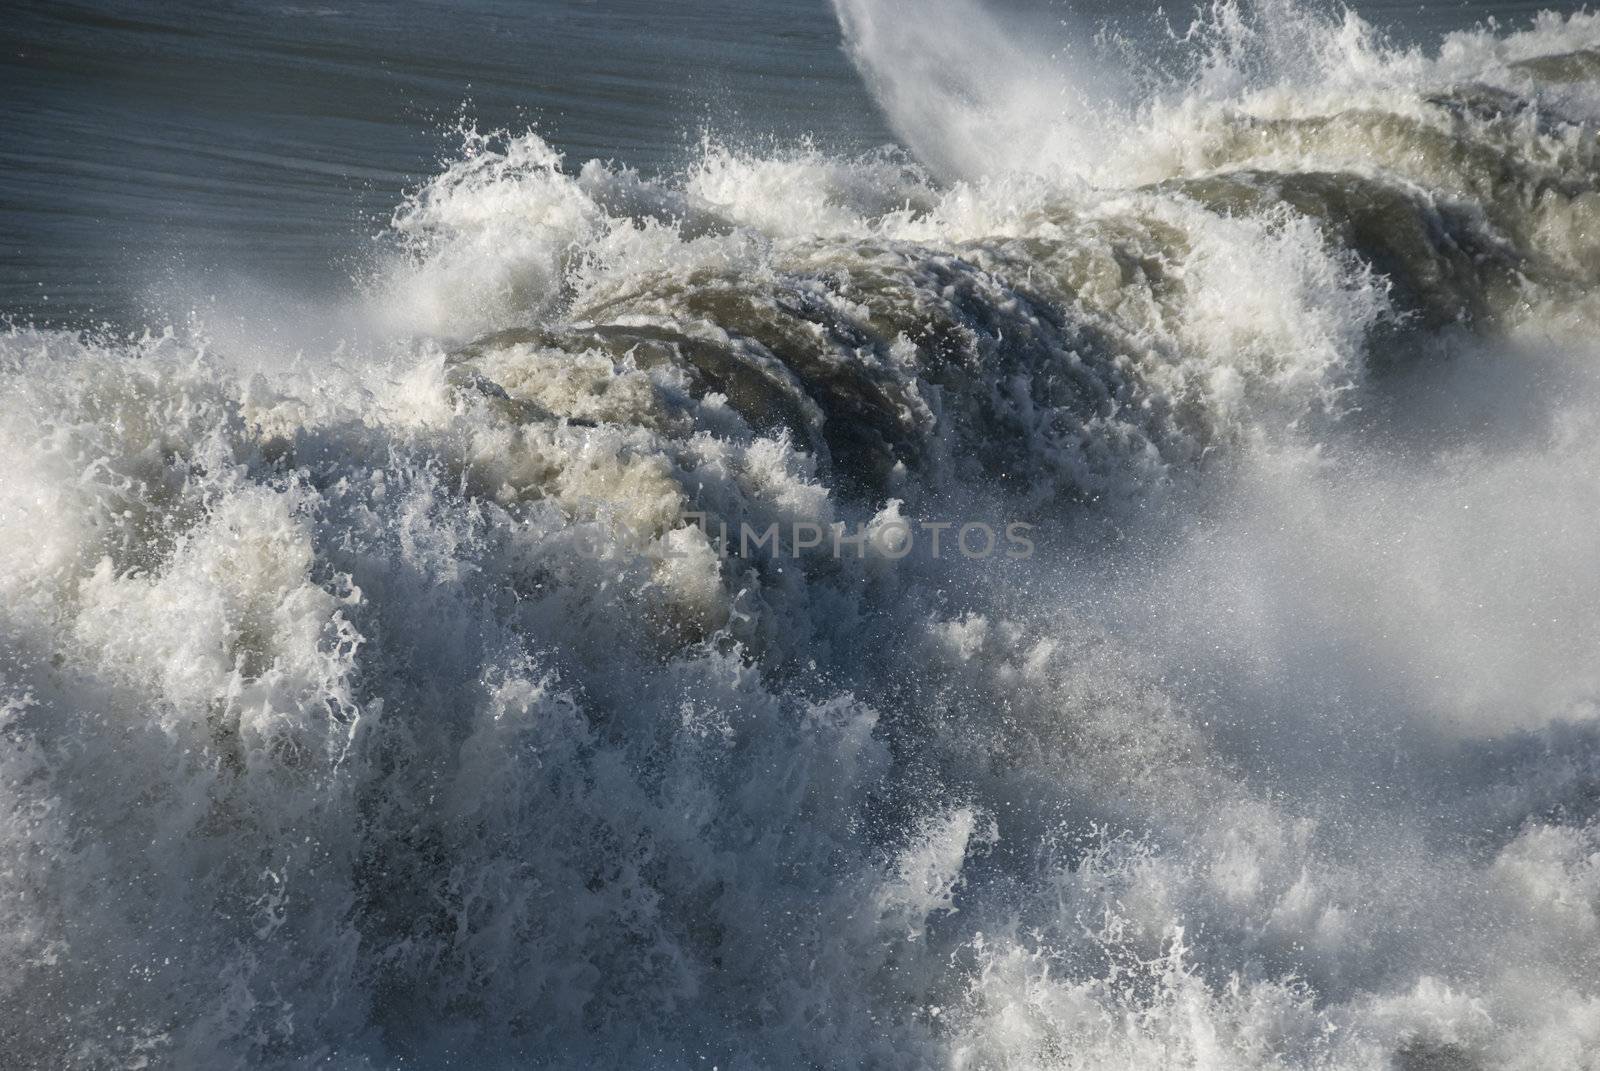 A powerful wave approaching Lido di Camaiore Beach, Italy